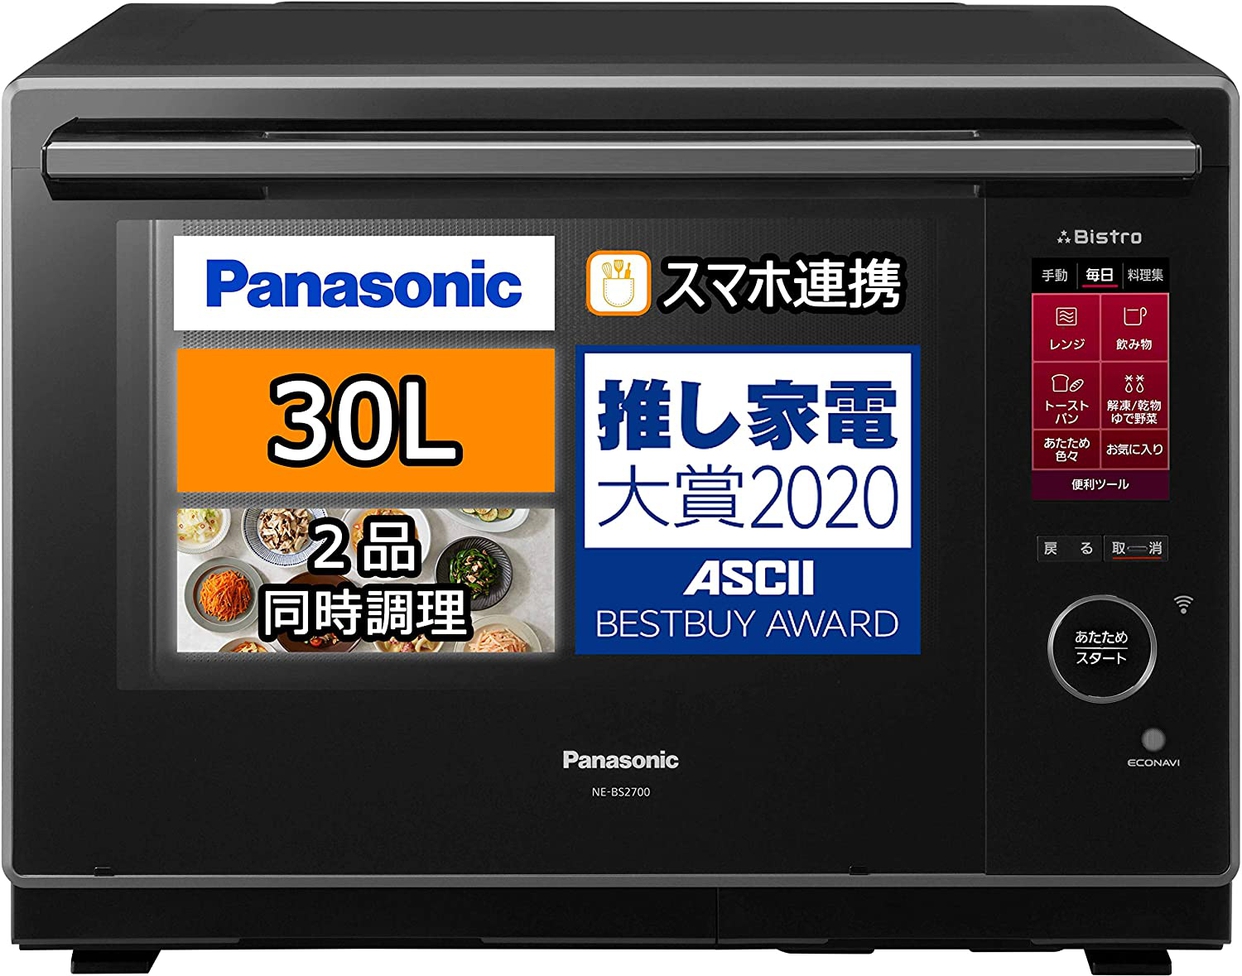 Panasonic(パナソニック) ビストロ スチームオーブンレンジ NE-BS2700